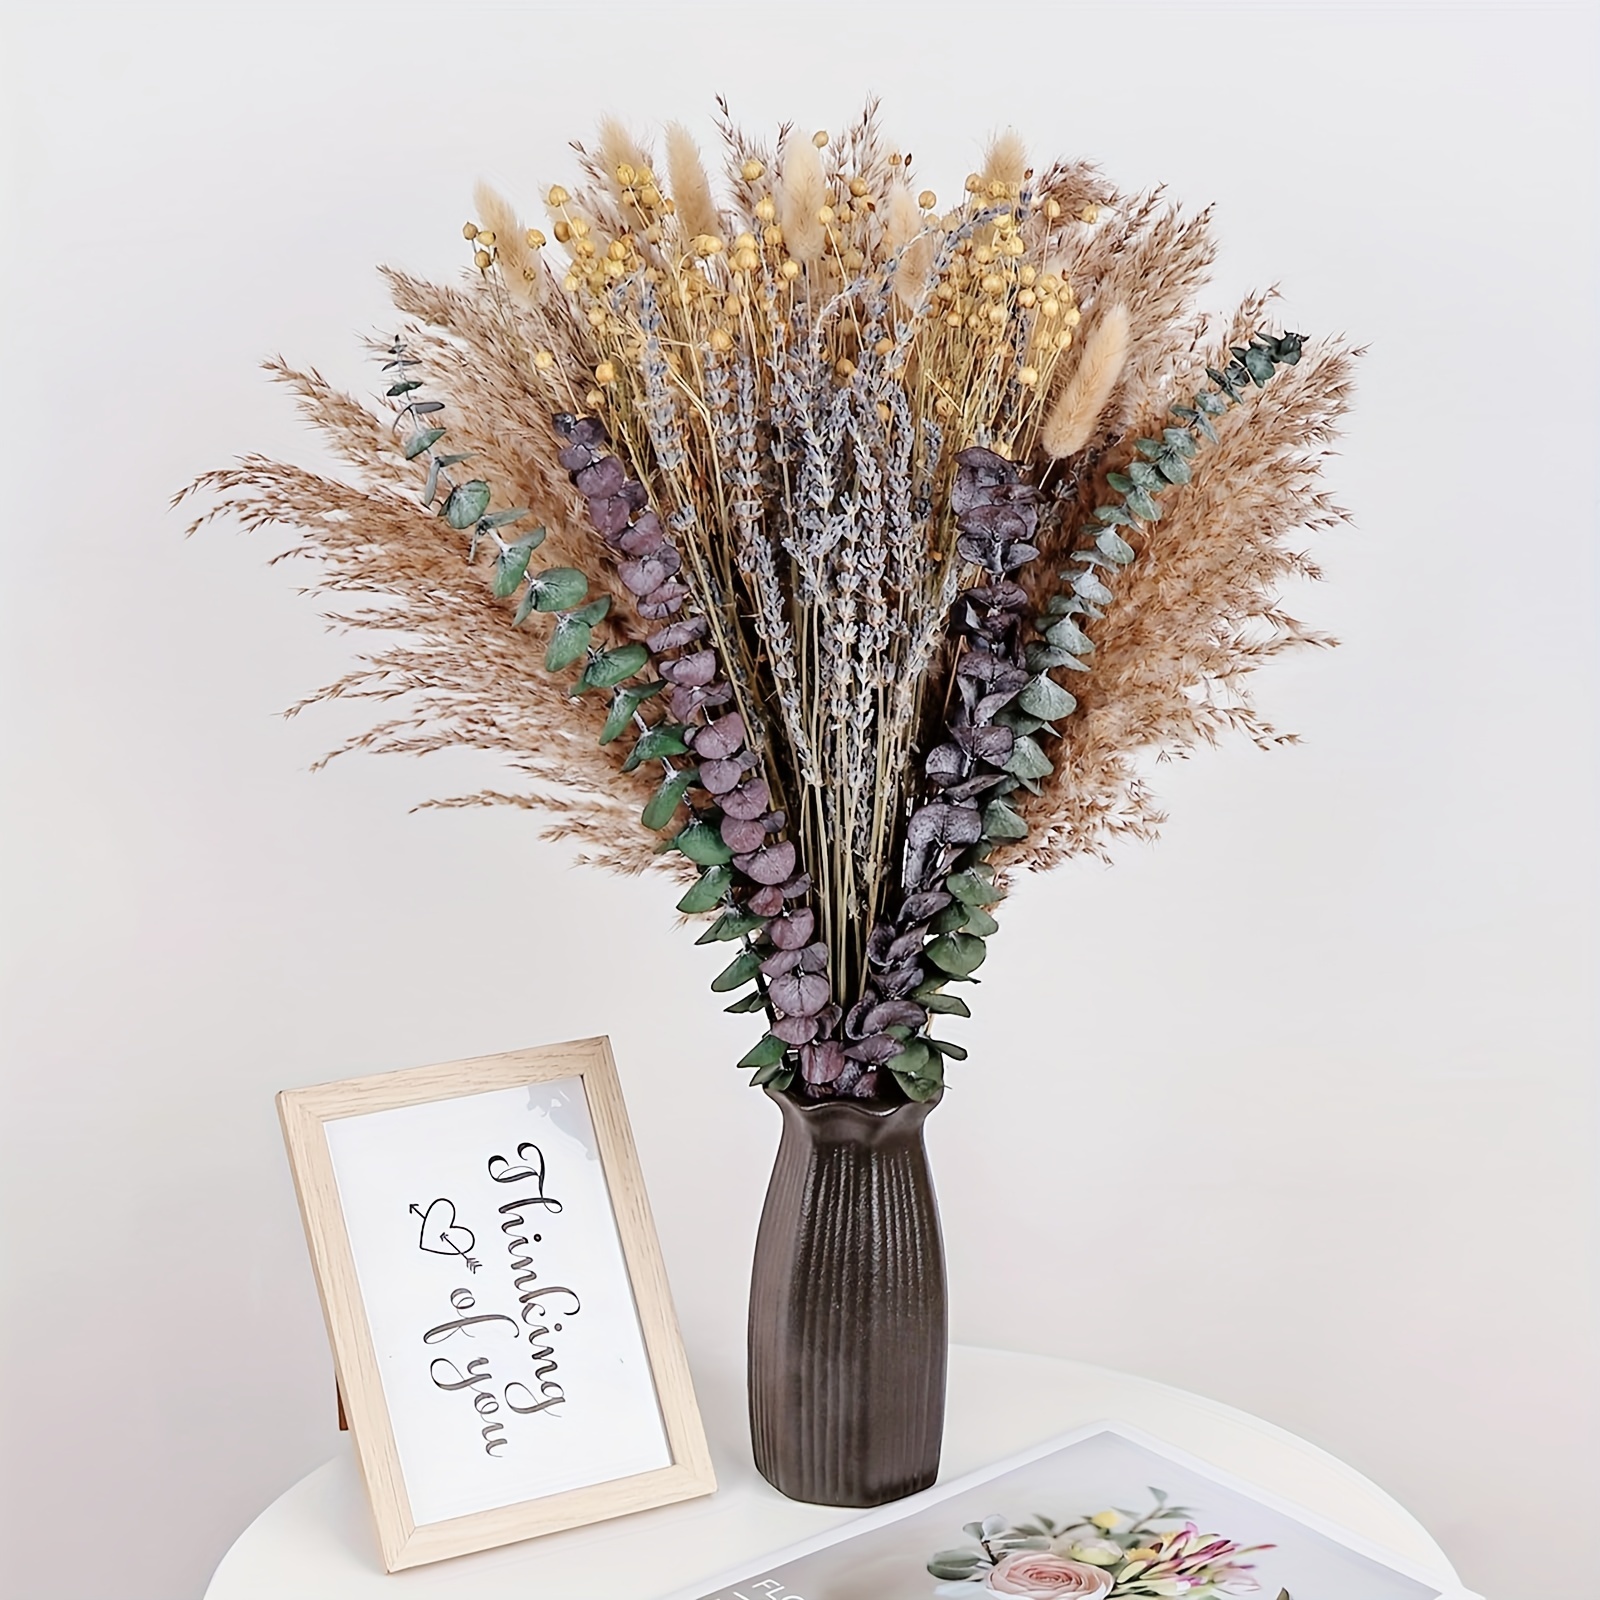 Boho Dried Flower Arrangements, Dry Flower Bouquet Lavender